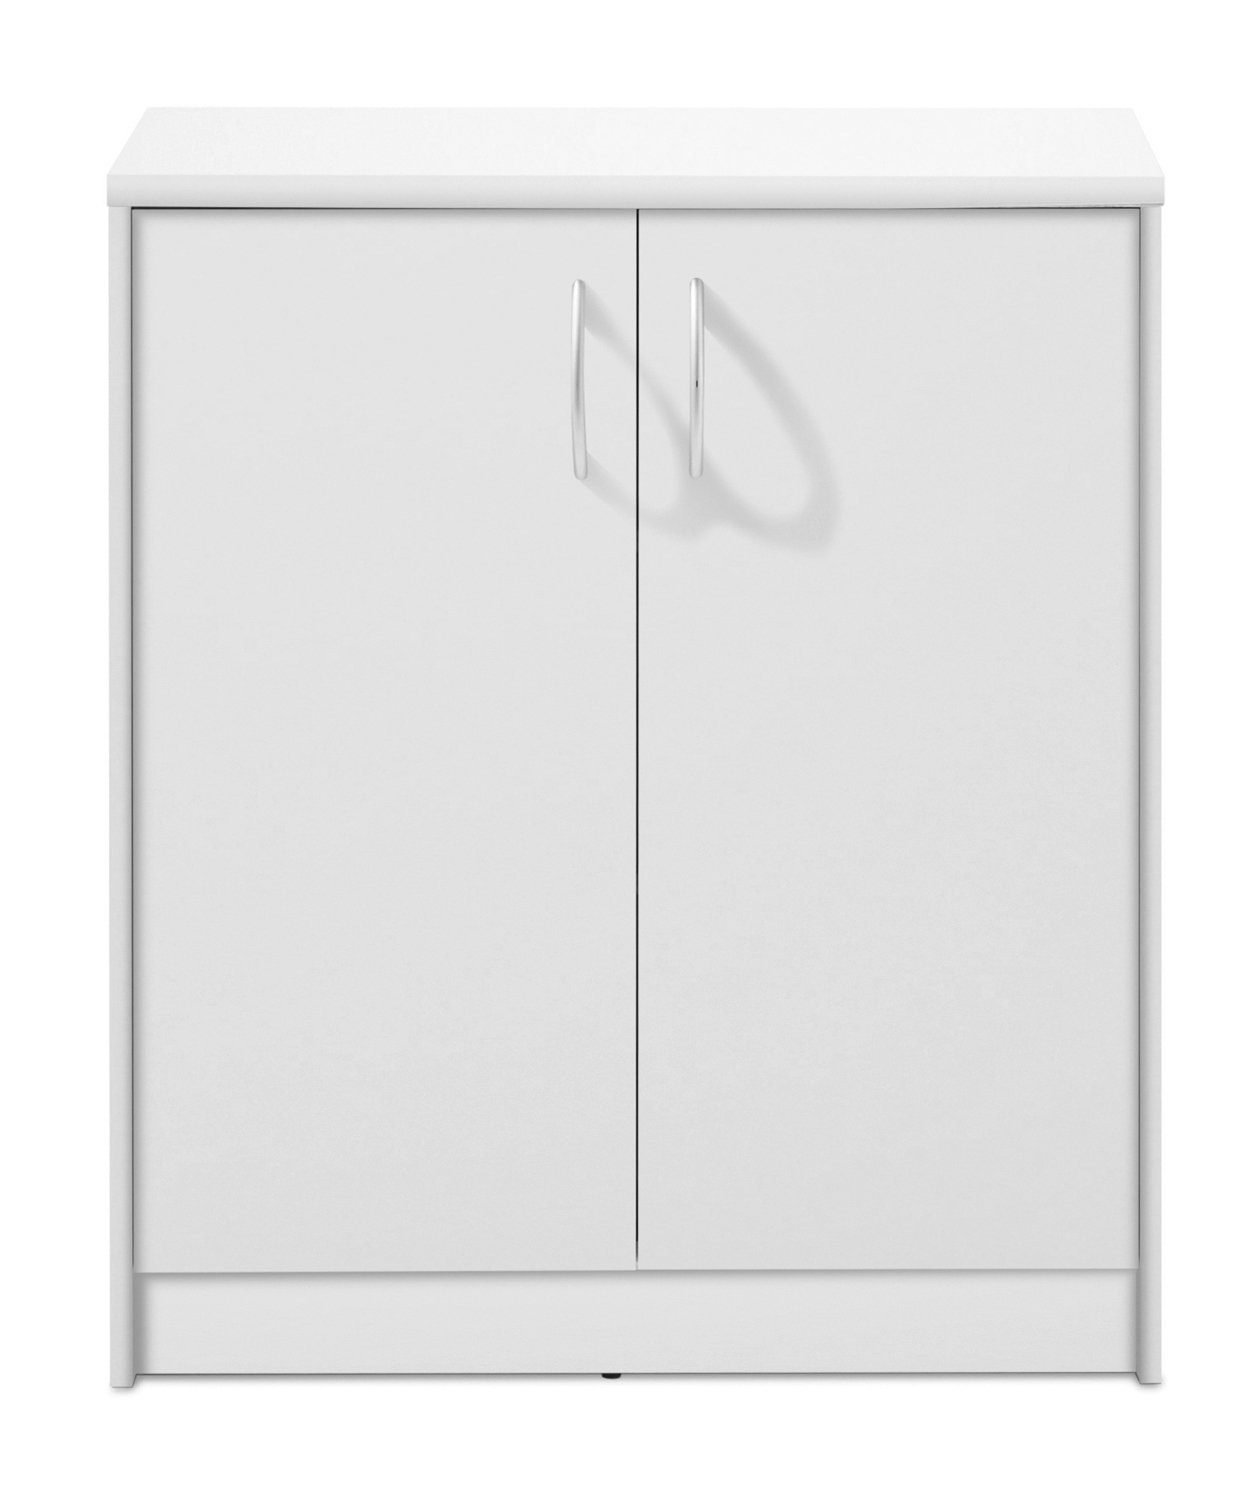 x 74 cm, Türen Weiß B 2 matt, H 86 OPTIMUS, Kommode